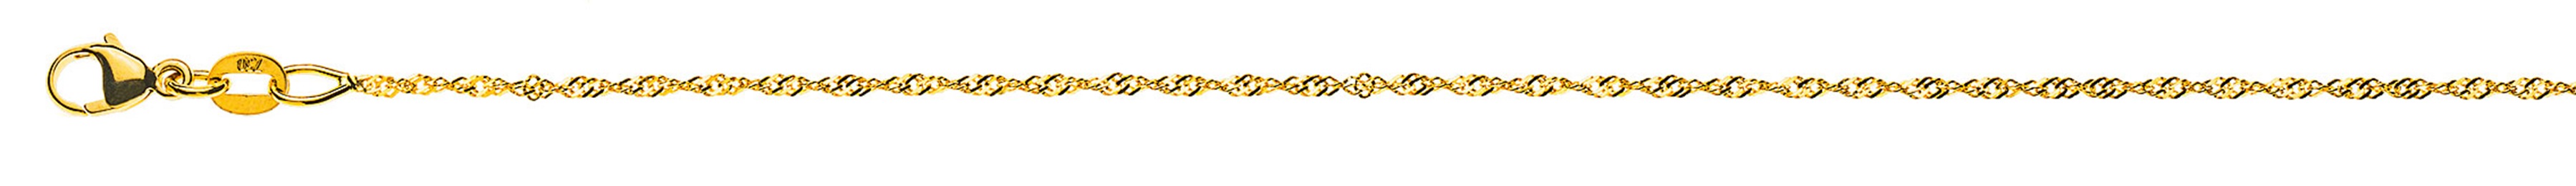 AURONOS Prestige Necklace Yellow Gold 18K Singapore Chain 40cm 1.2mm